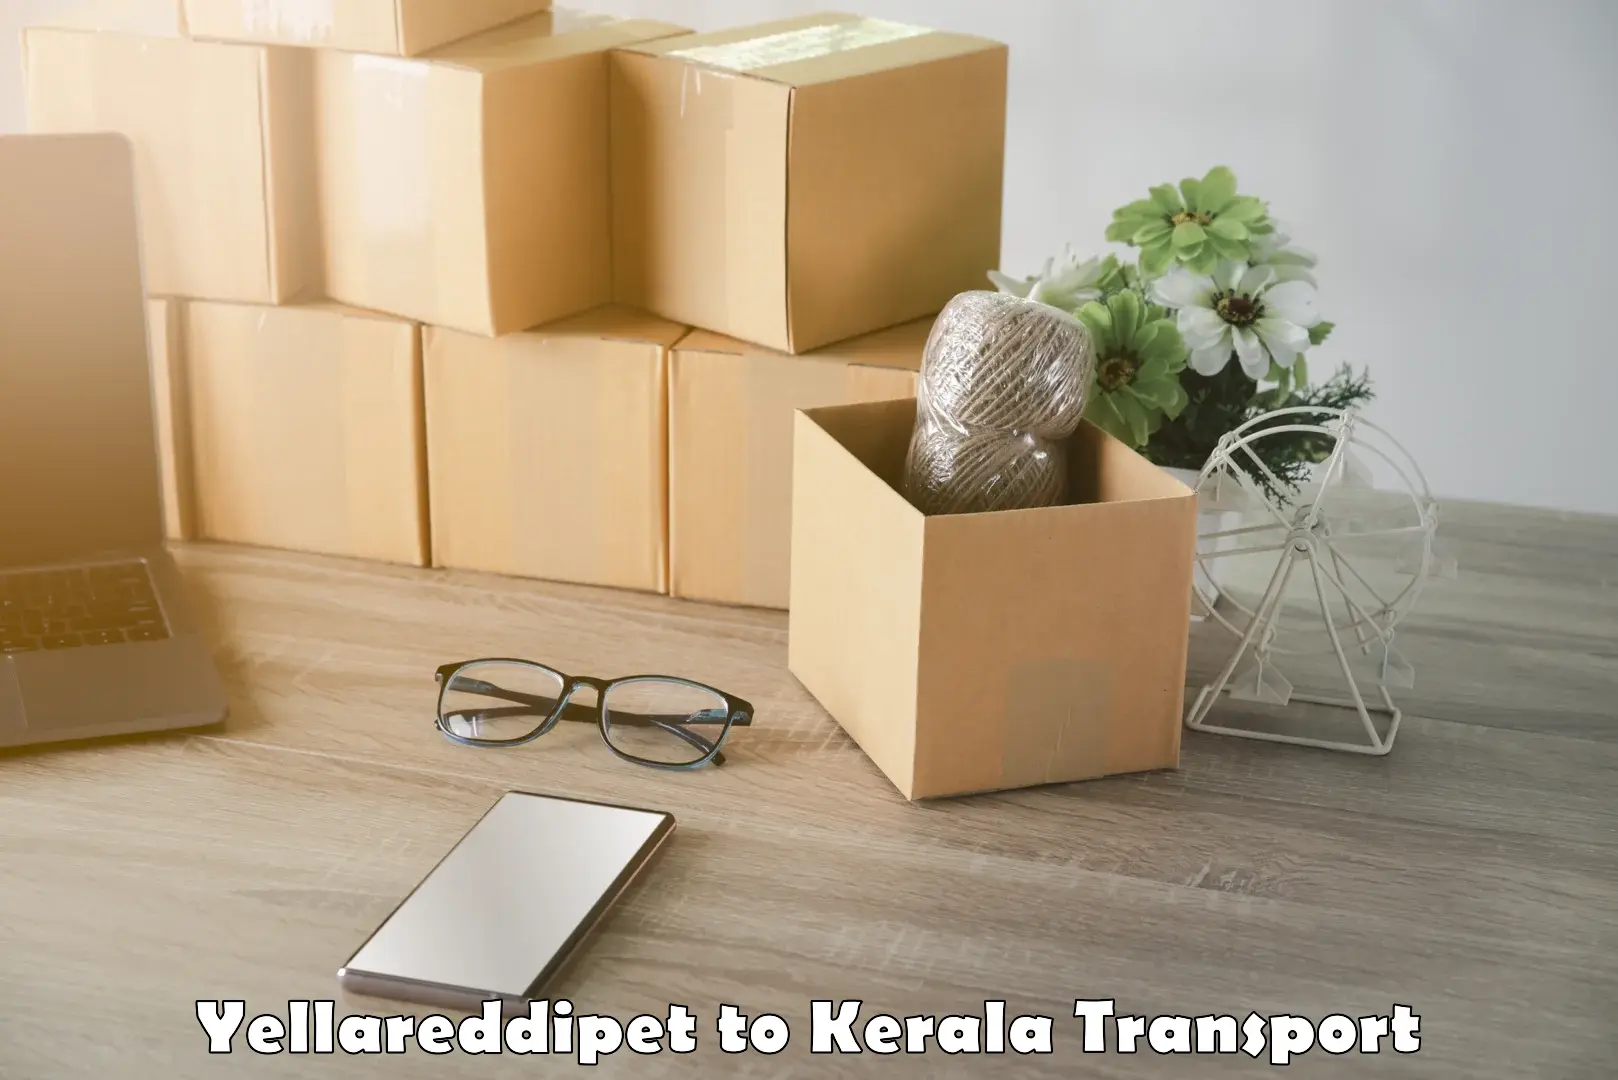 Truck transport companies in India Yellareddipet to Kallikkad